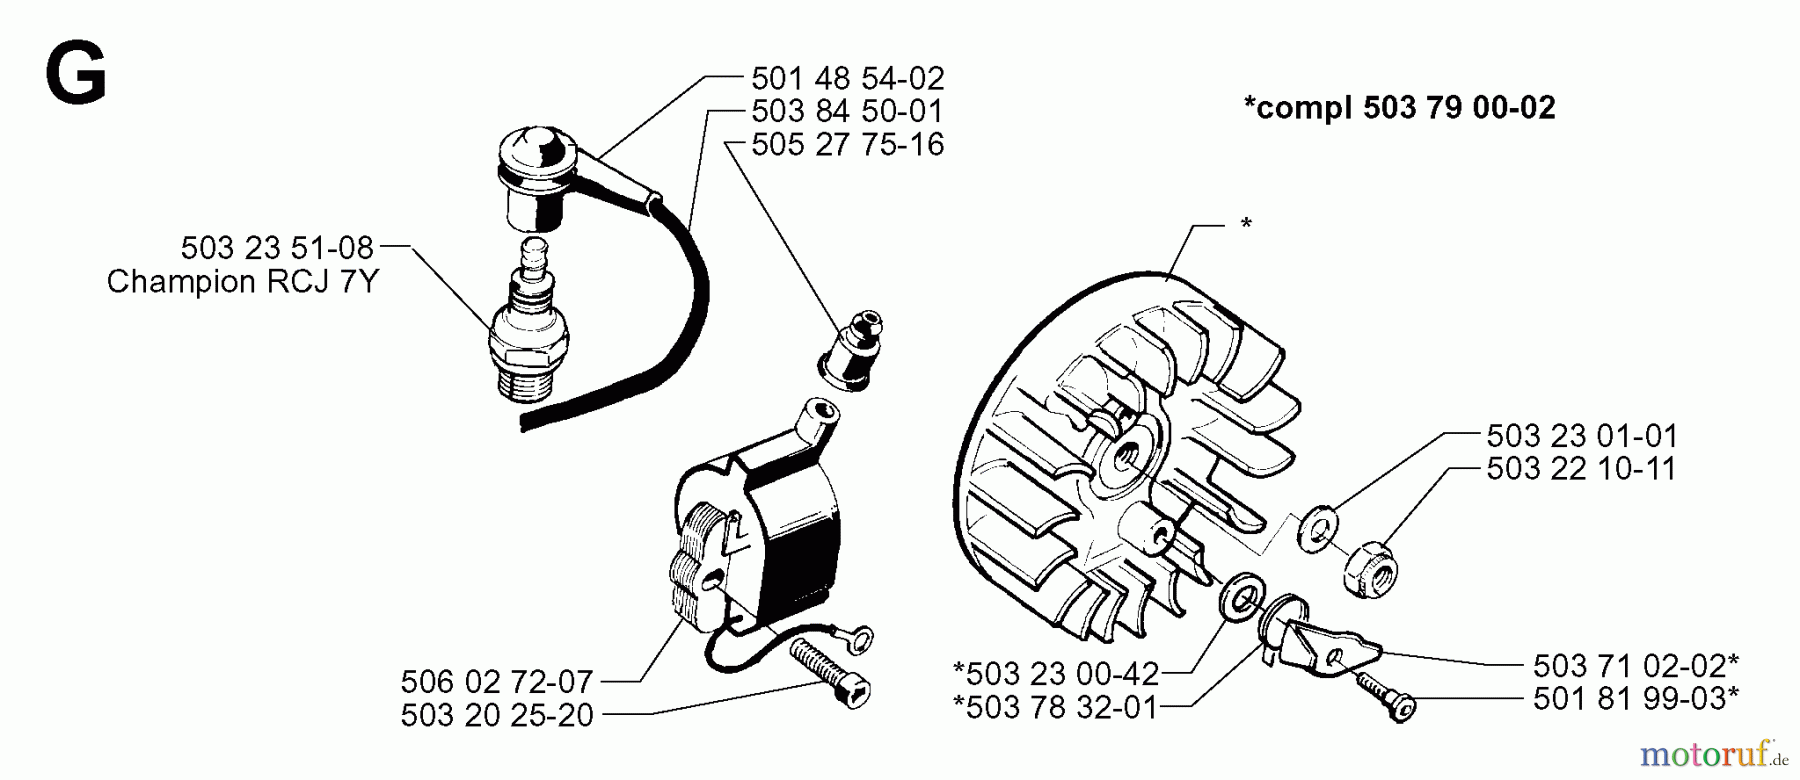  Jonsered Motorsensen, Trimmer GR41 - Jonsered String/Brush Trimmer (1998-06) IGNITION SYSTEM